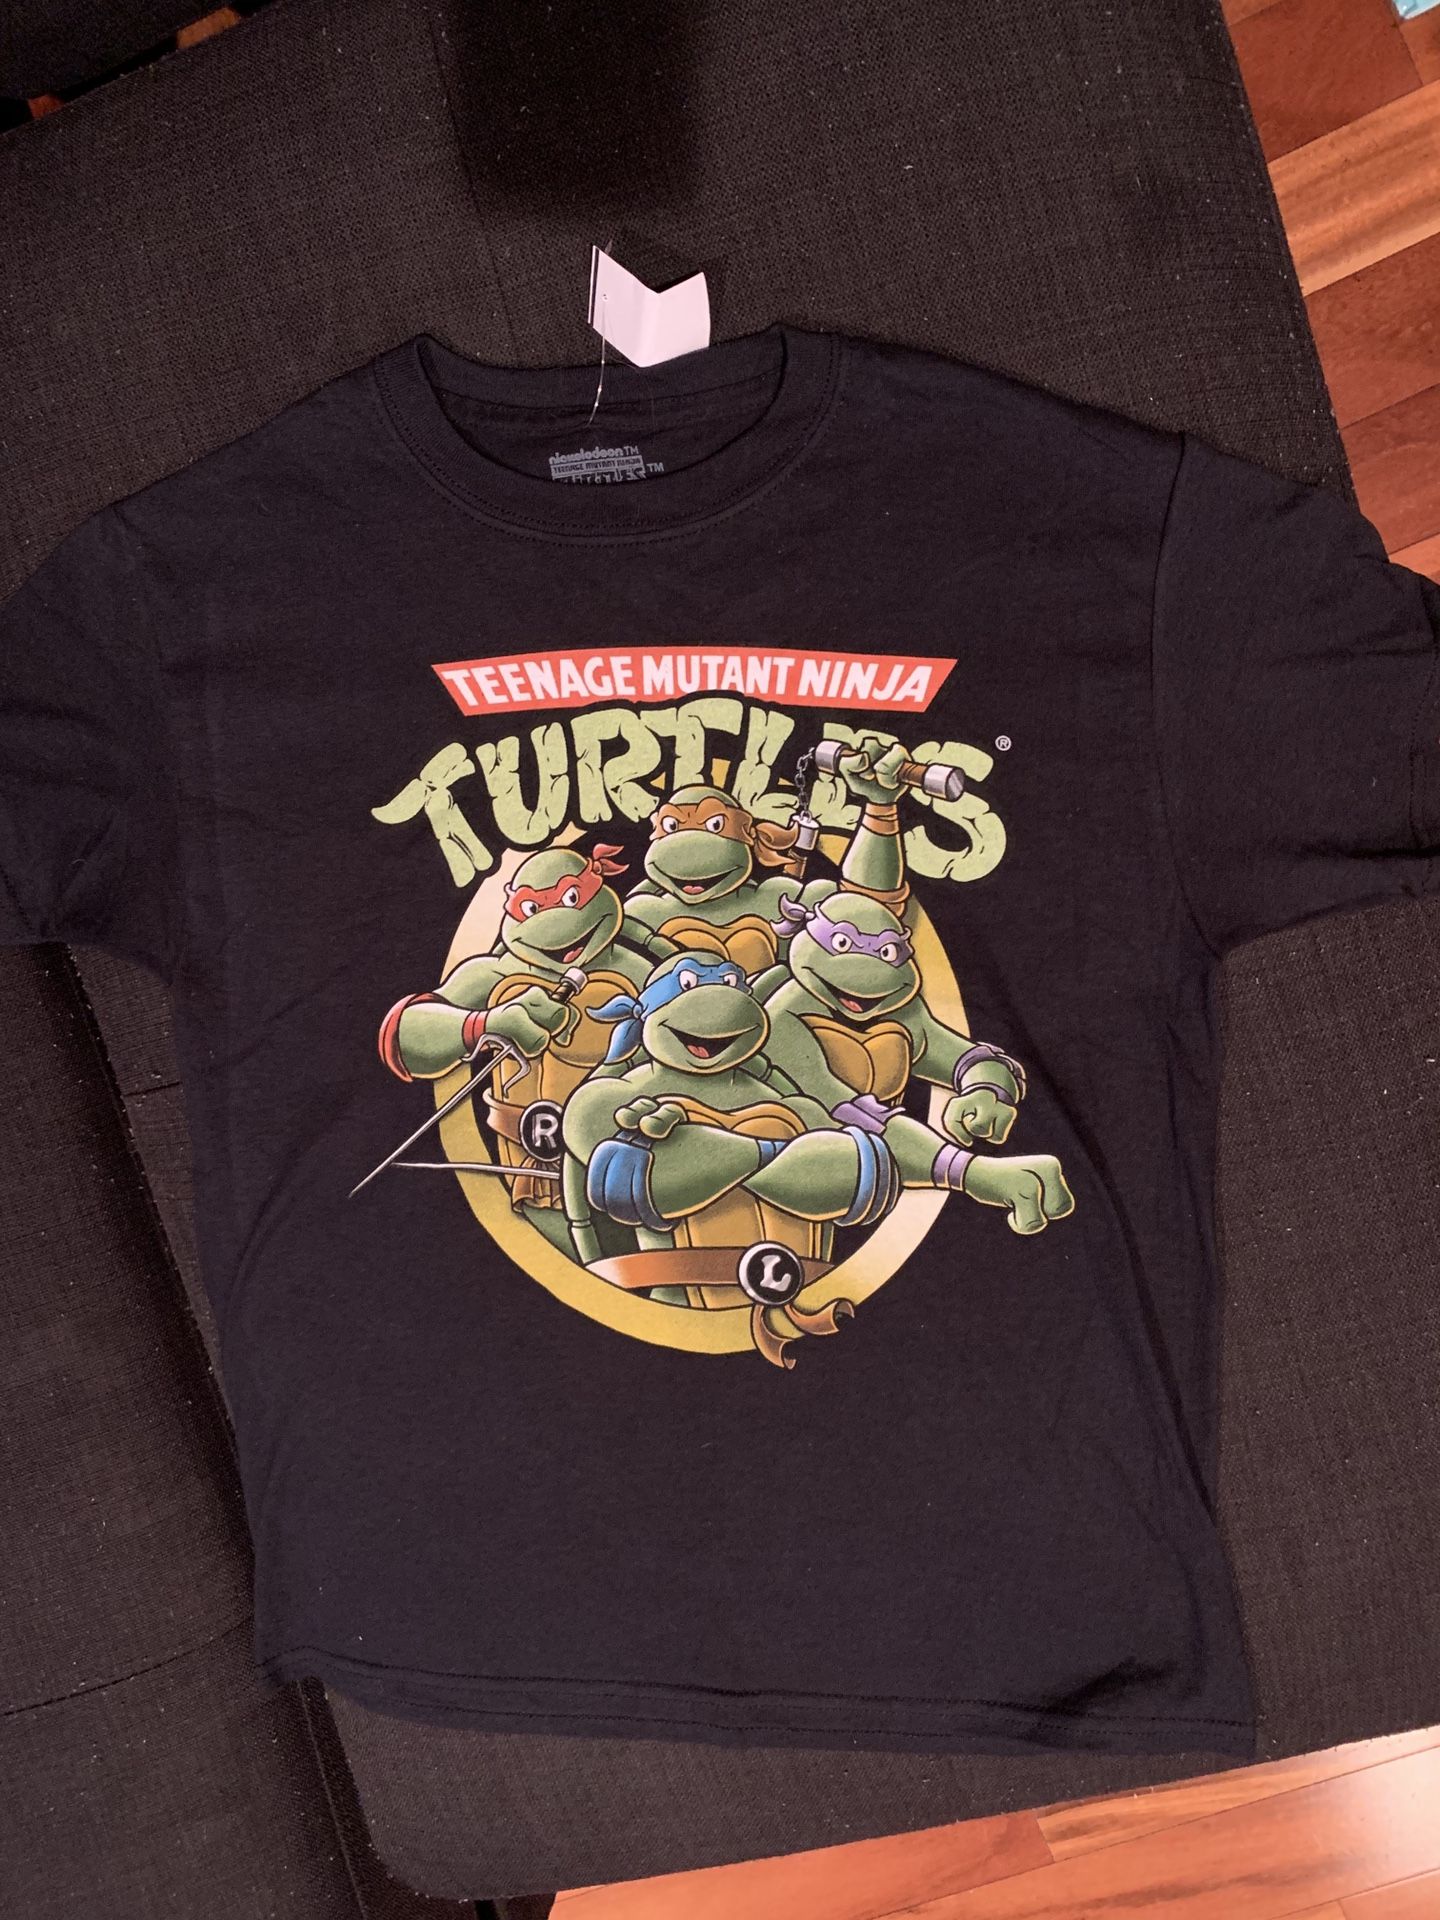 Brand New Kids Nickelodeon Ninja Turtles Shirt!